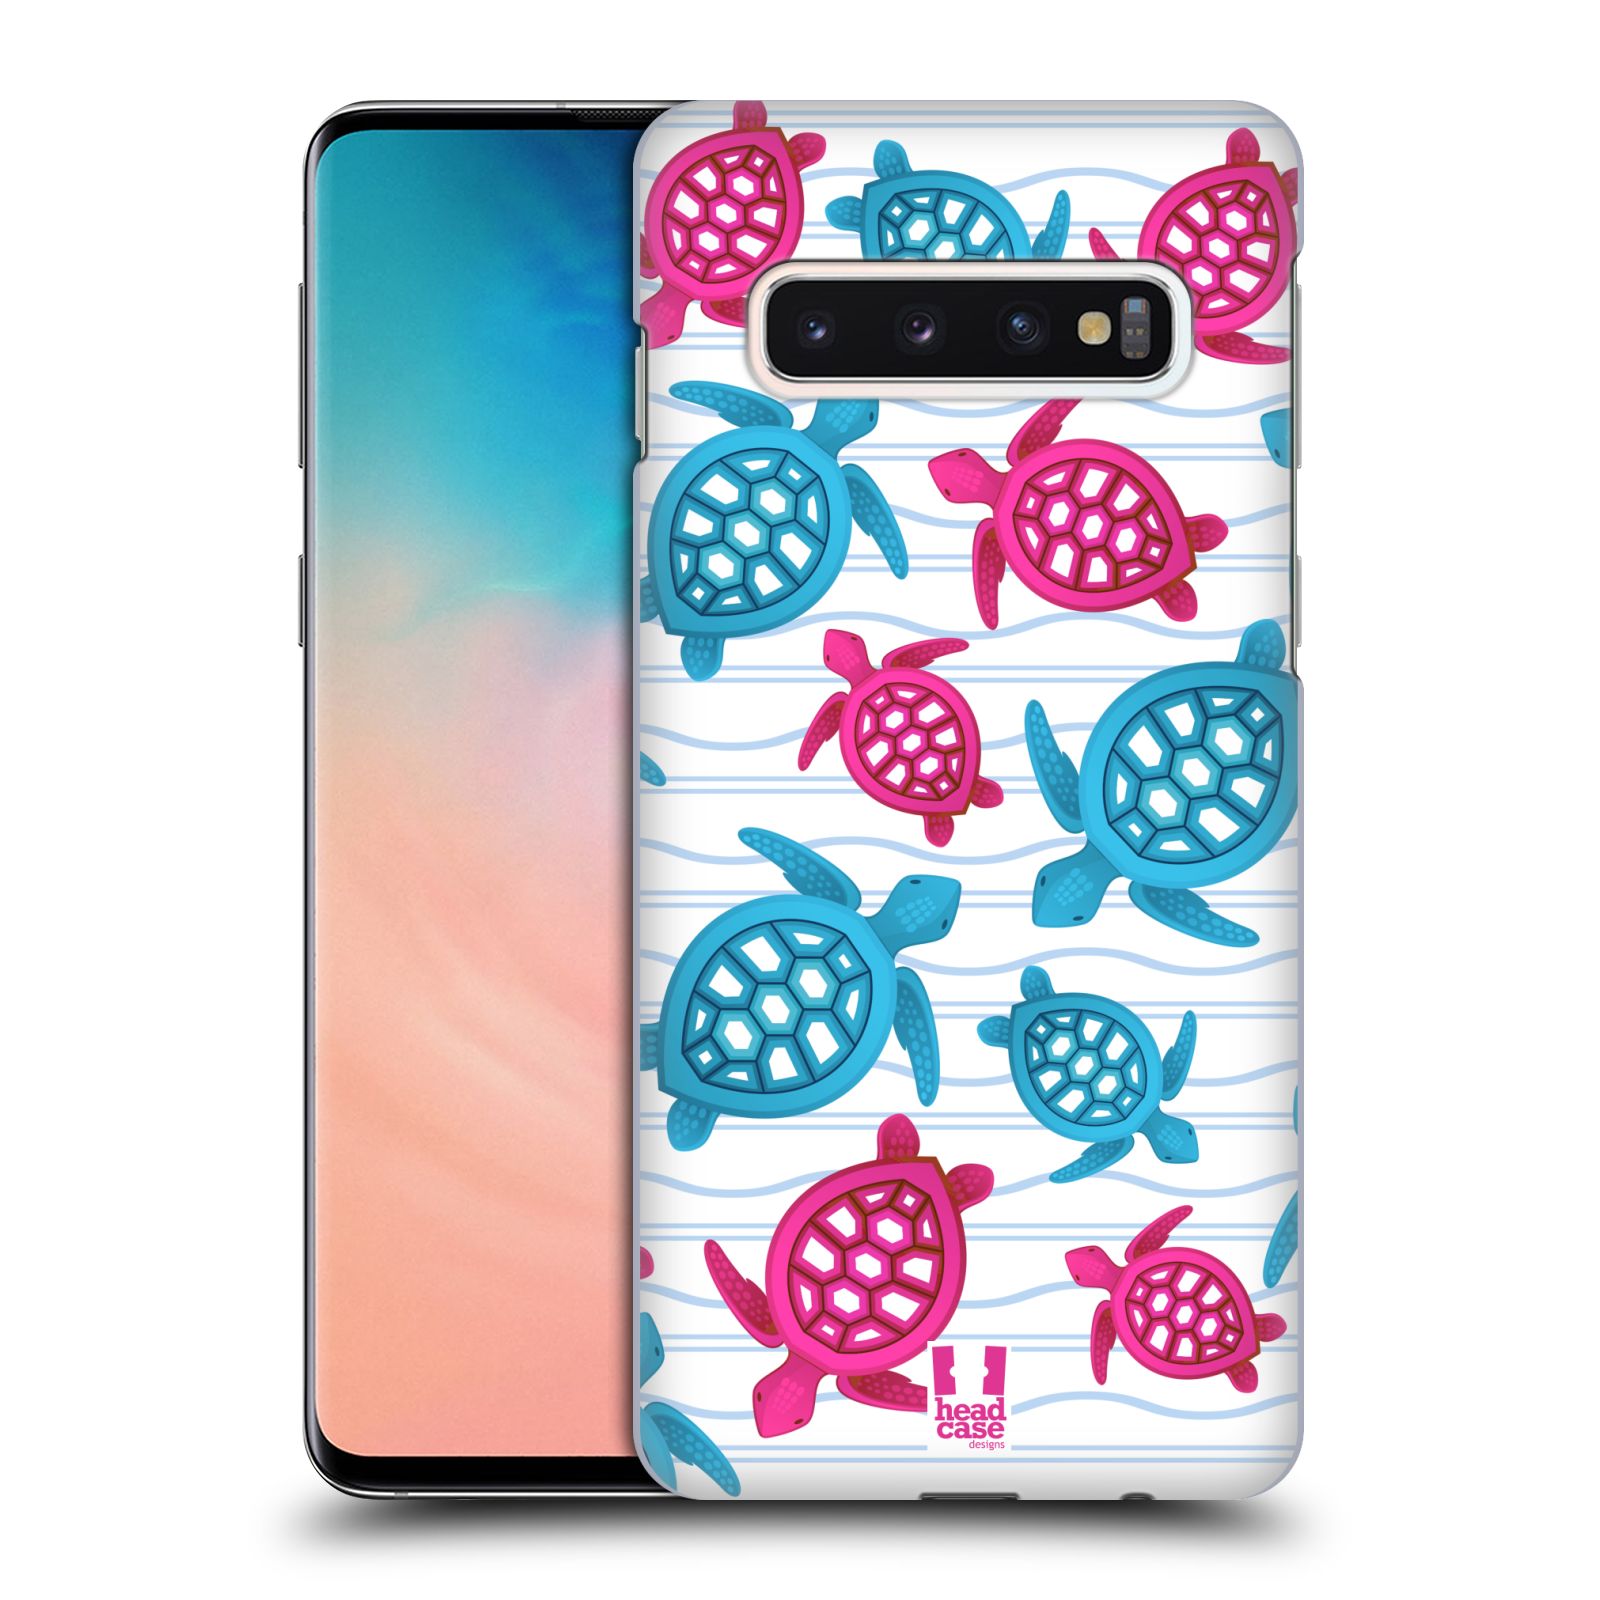 Zadní obal pro mobil Samsung Galaxy S10 - HEAD CASE - kreslený mořský vzor želvičky